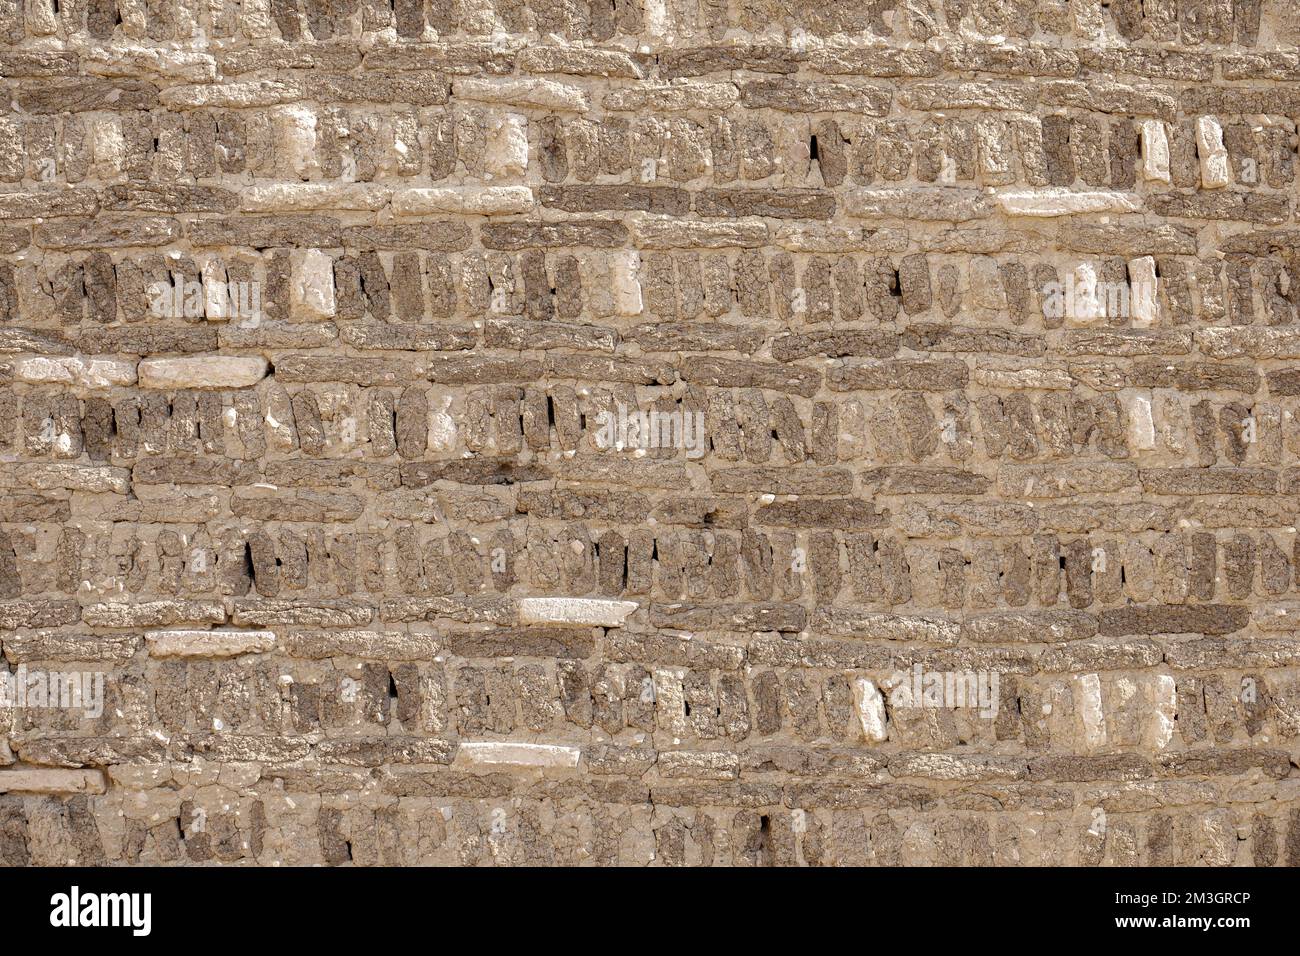 Mue-briques au temple de Ptolemaic, Deir el-Medina, village ouvrier près de la Vallée des Rois, rive ouest du Nil, Louxor, Egypte Banque D'Images